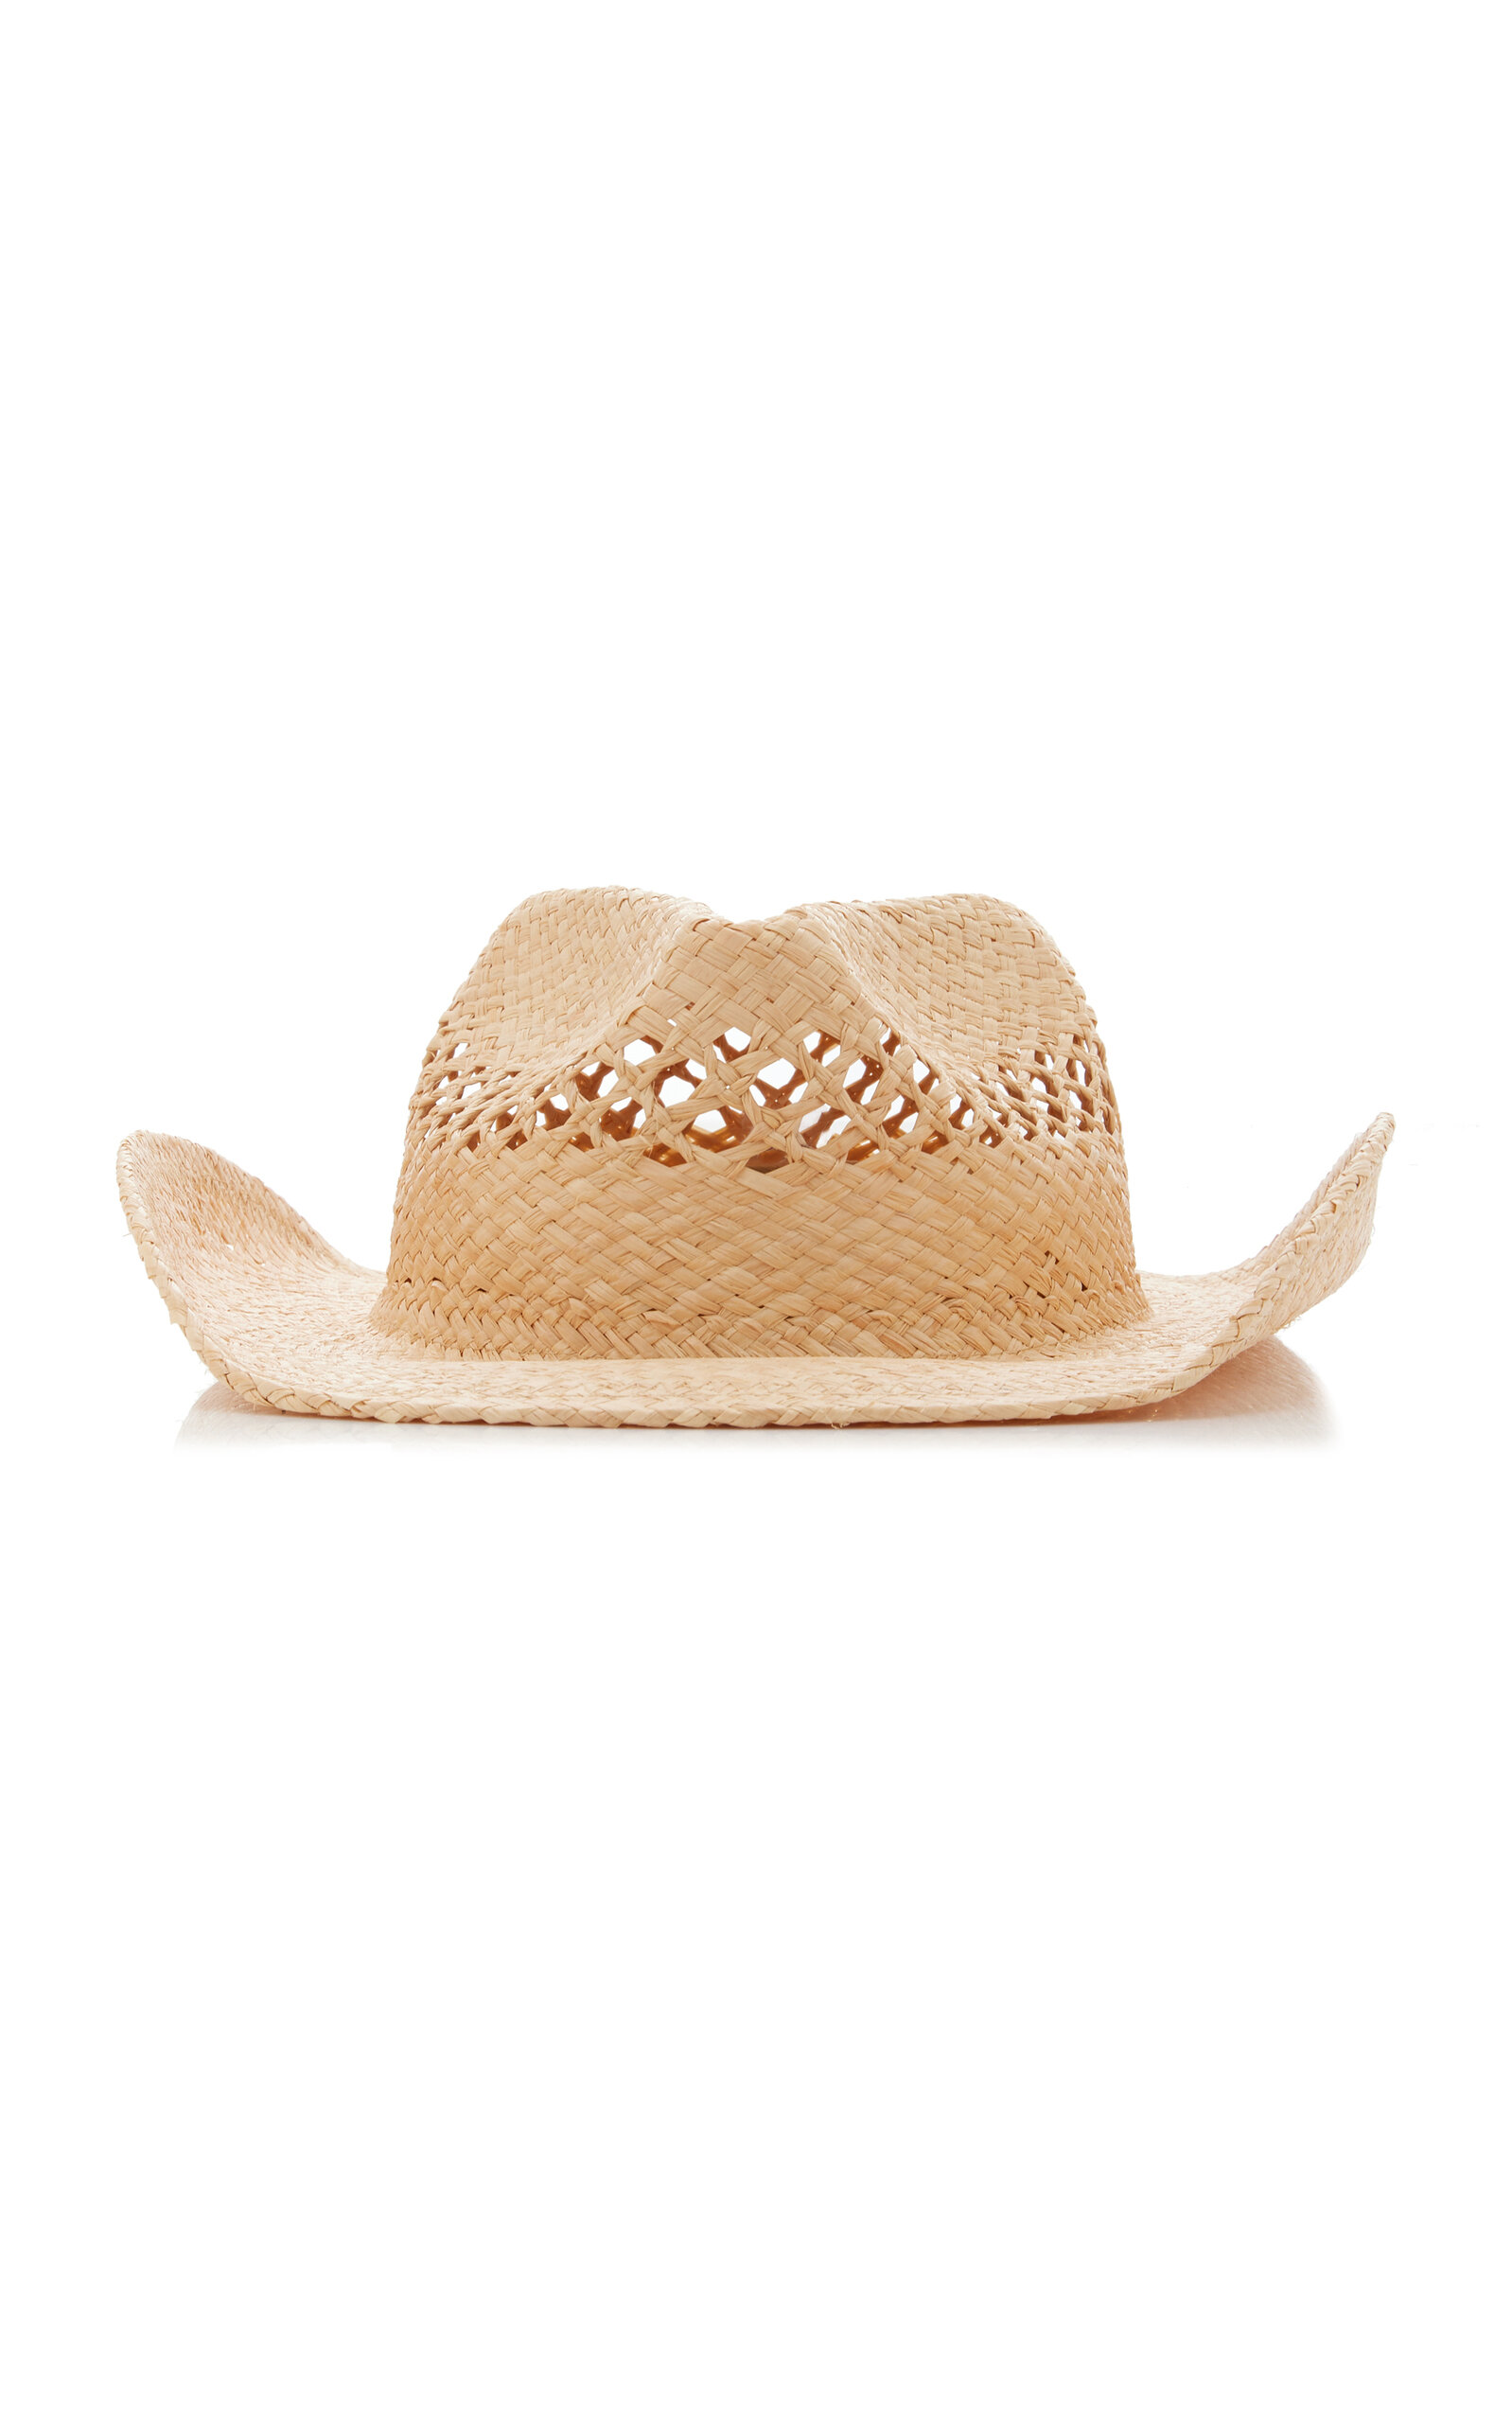 The Desert Straw Cowboy Hat